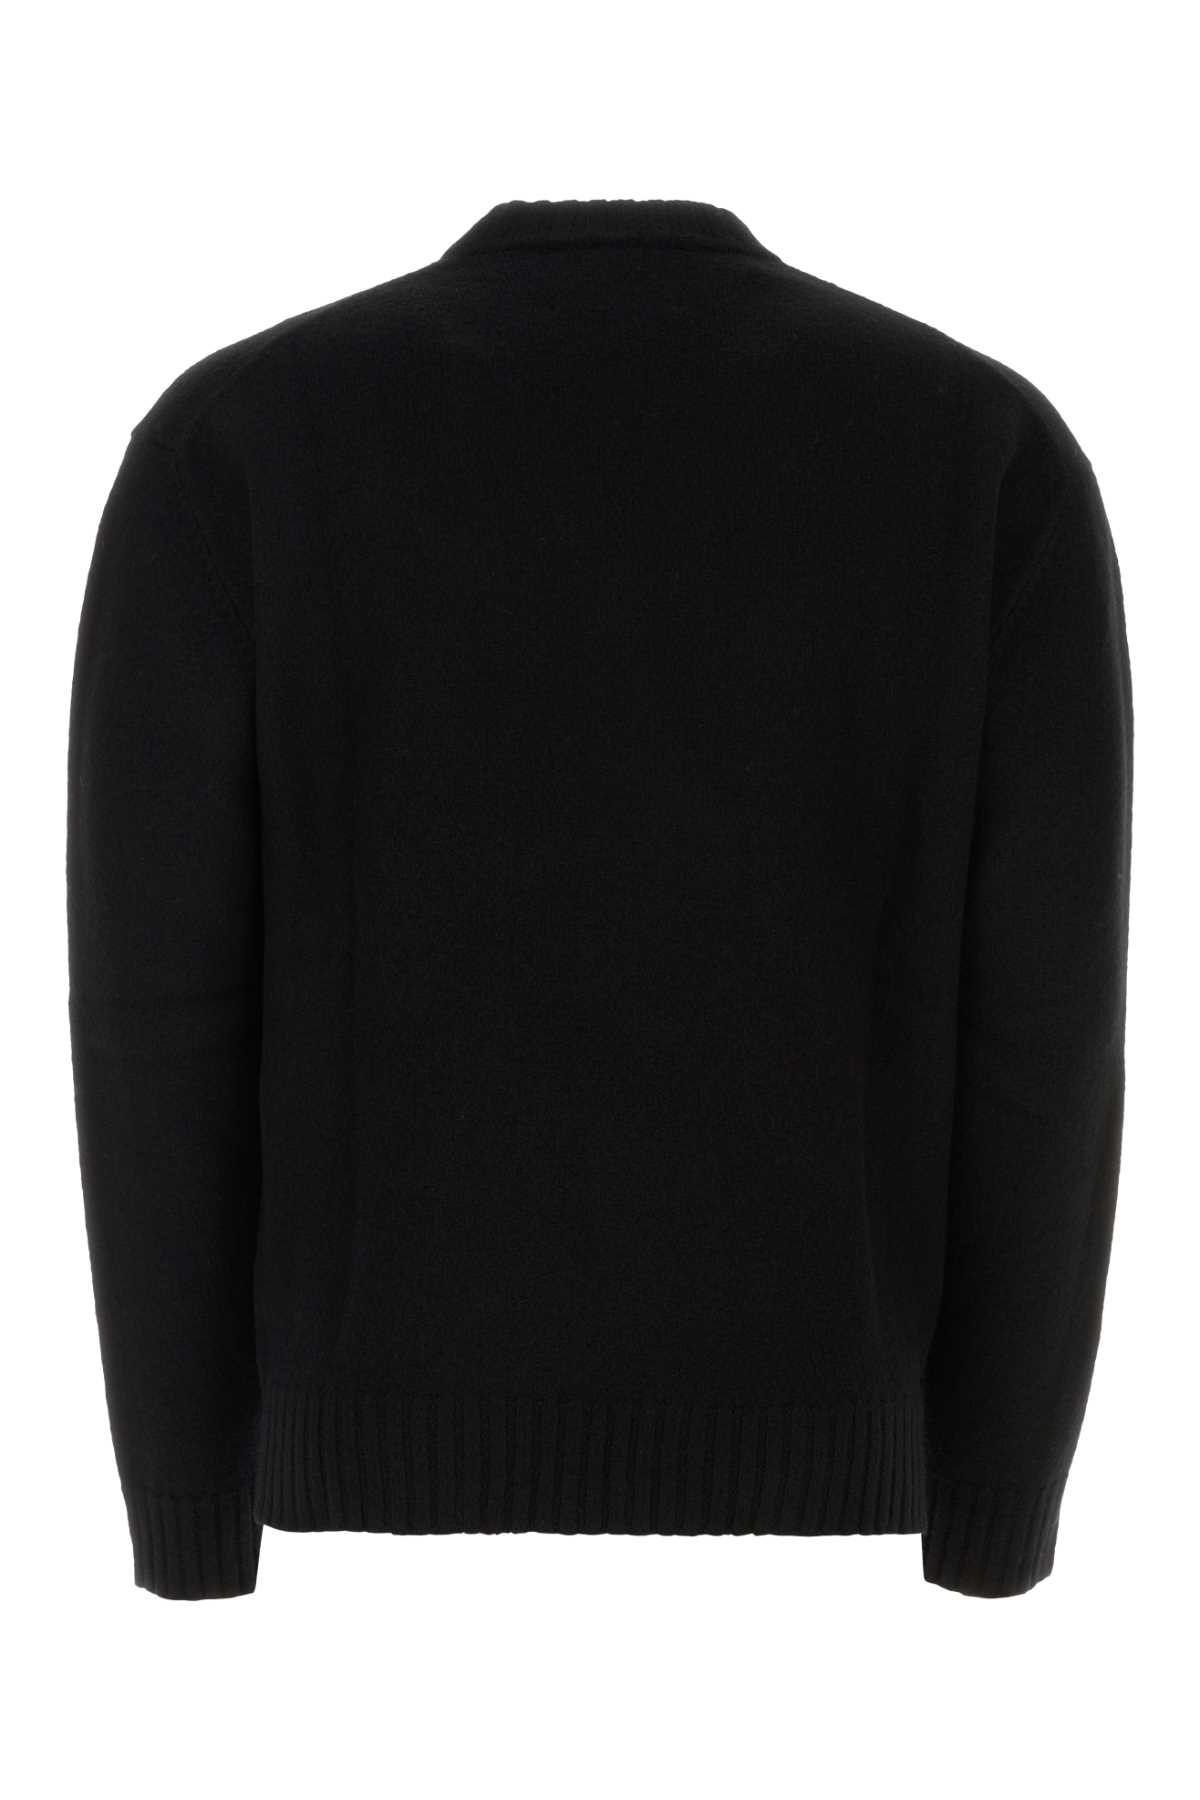 Jil Sander Black Wool Sweater In 001